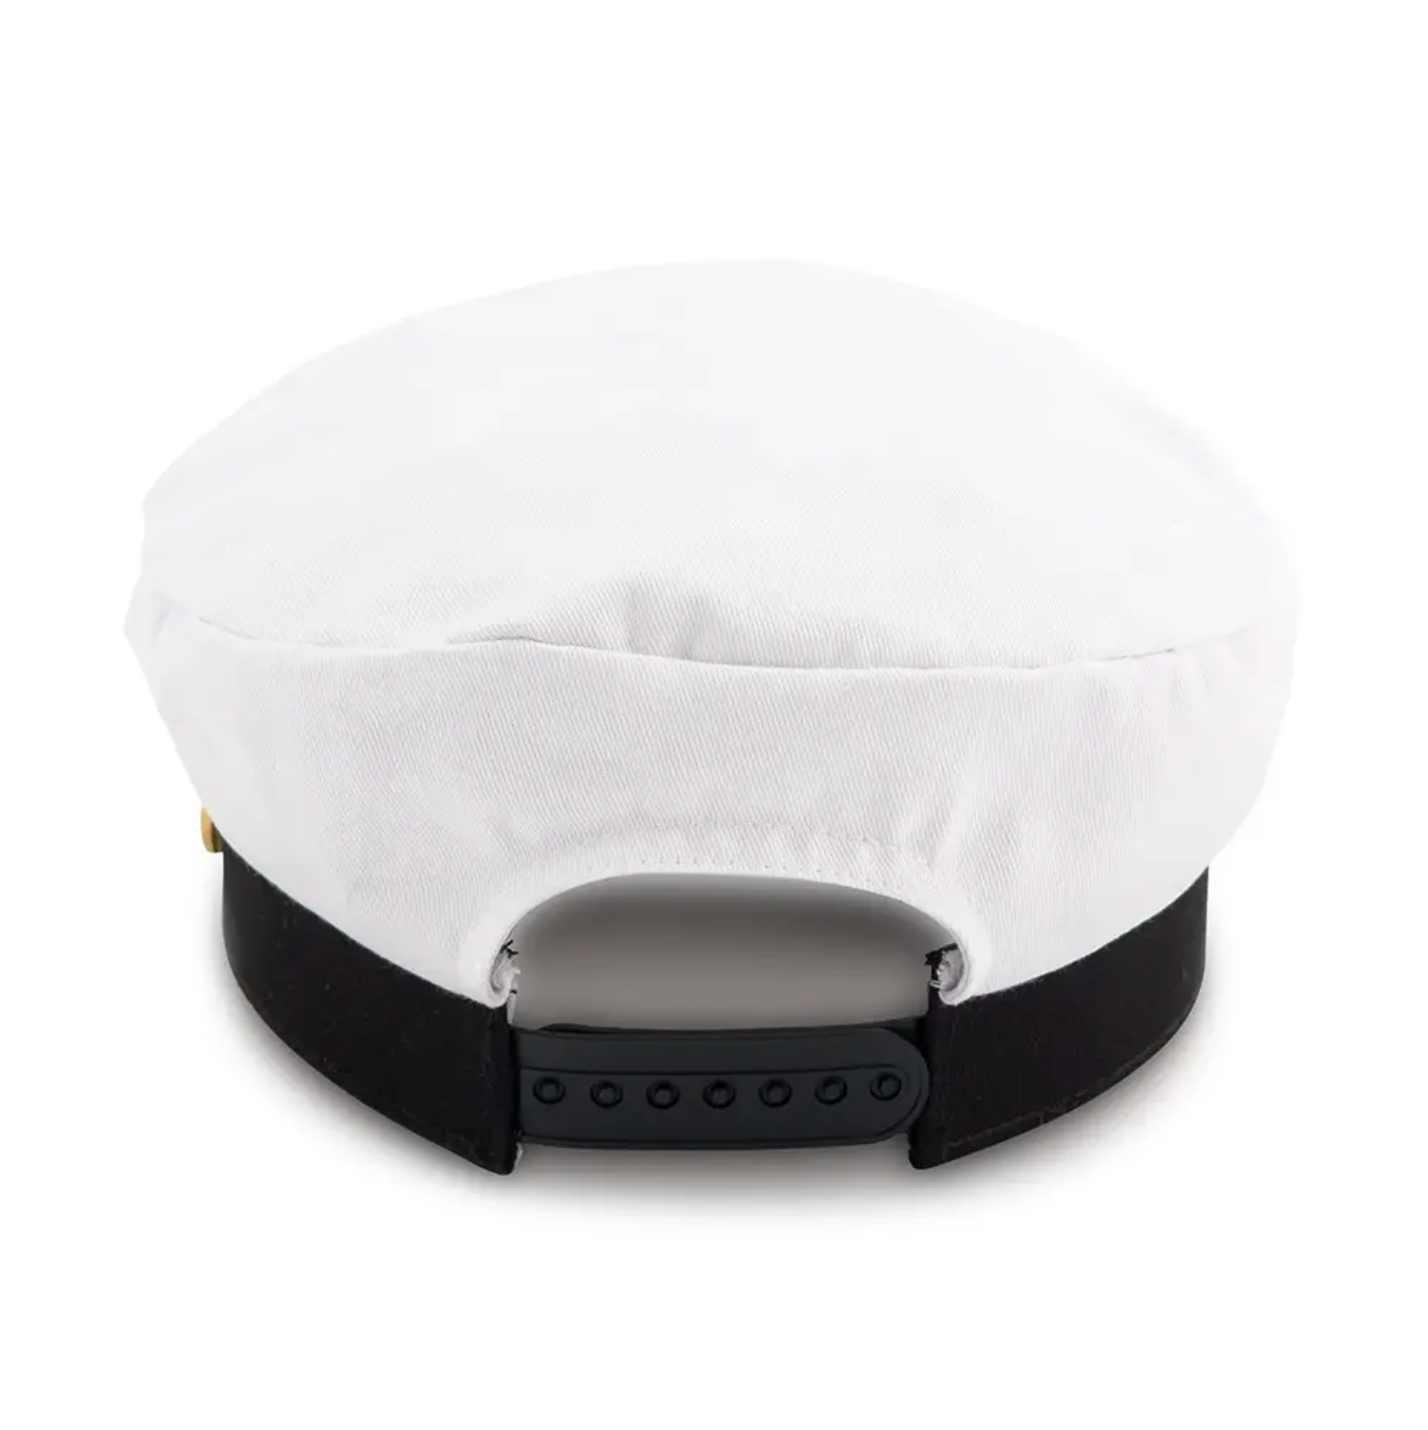 Nautical Bachelorette Party Captain Hat - Bride